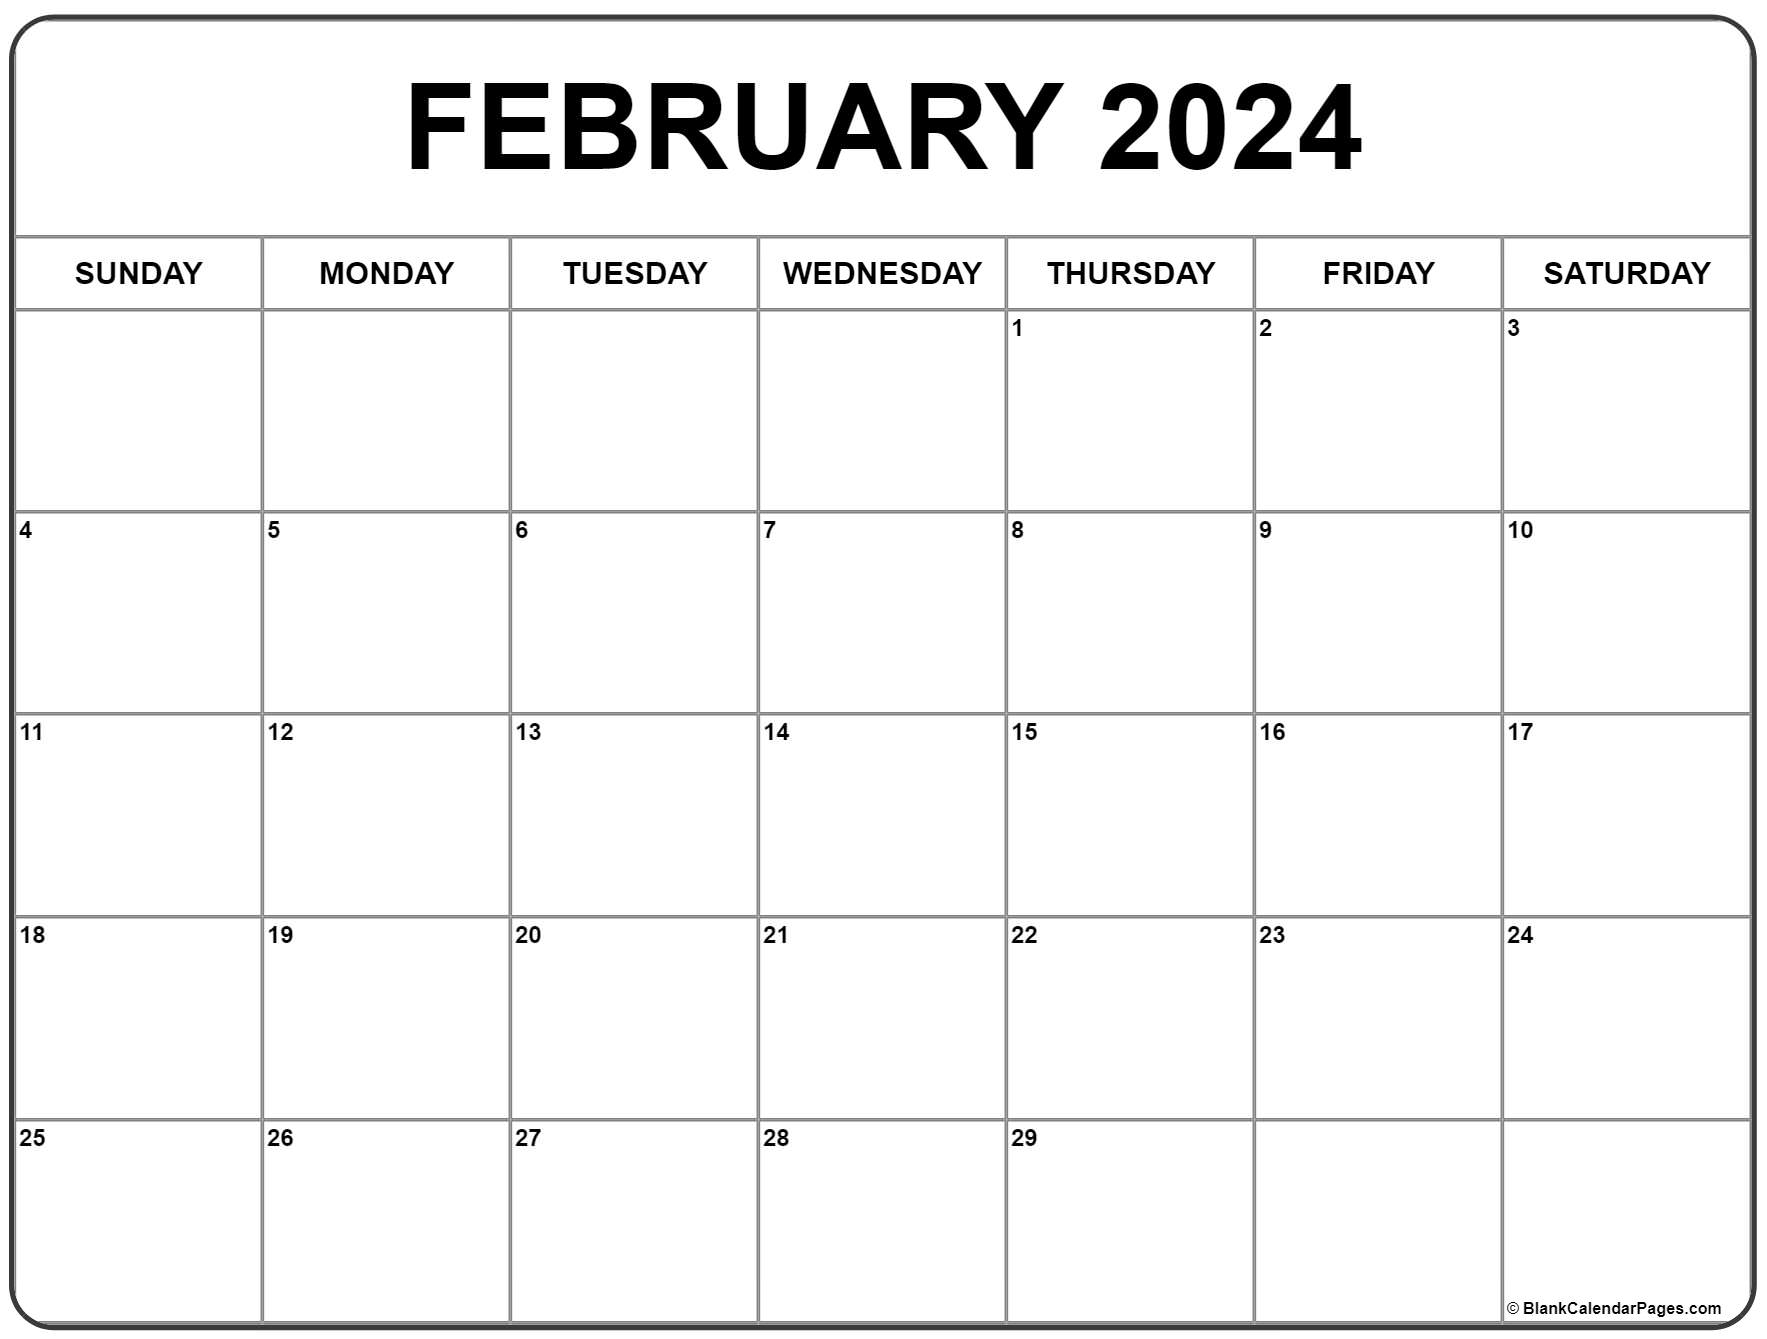 February 2024 Calendar | Free Printable Calendar for Printable Calendar 2024 February